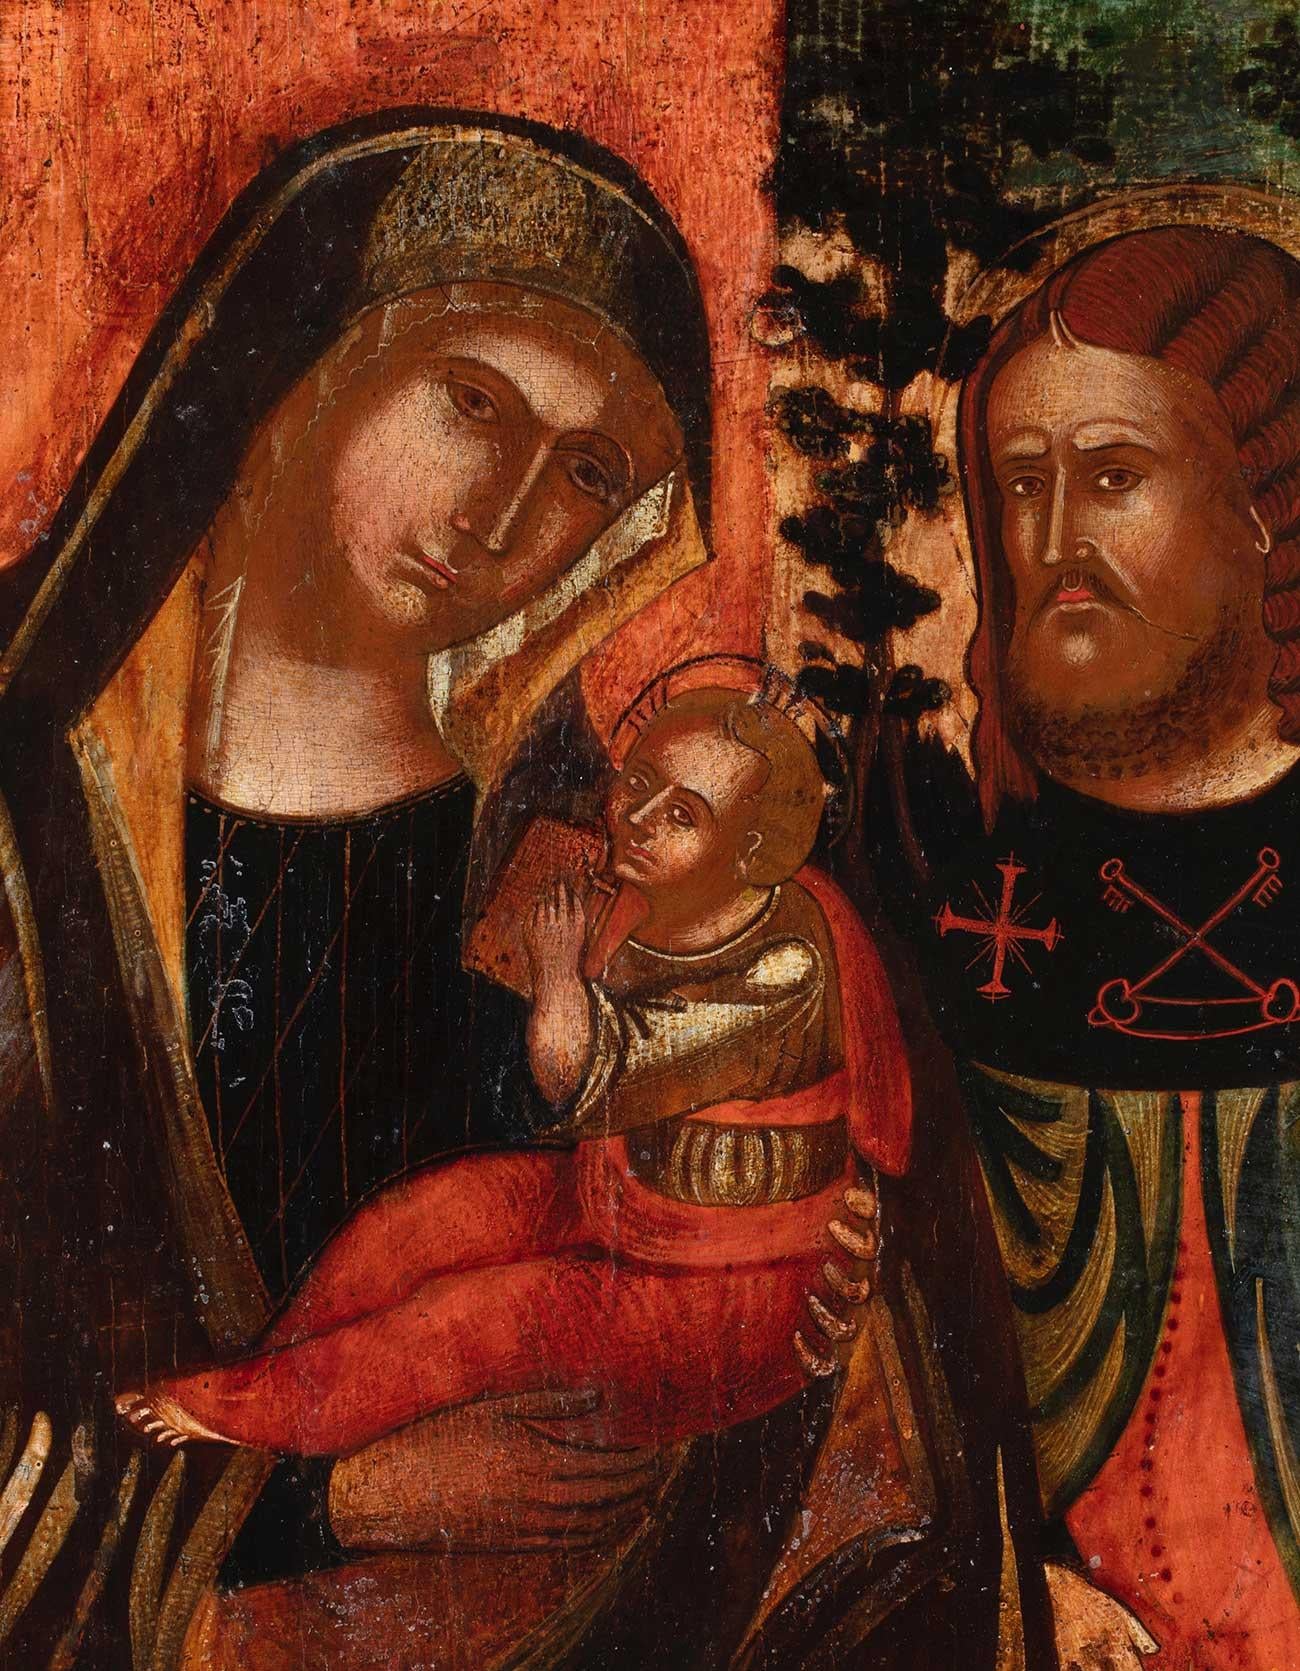 15th century paintings